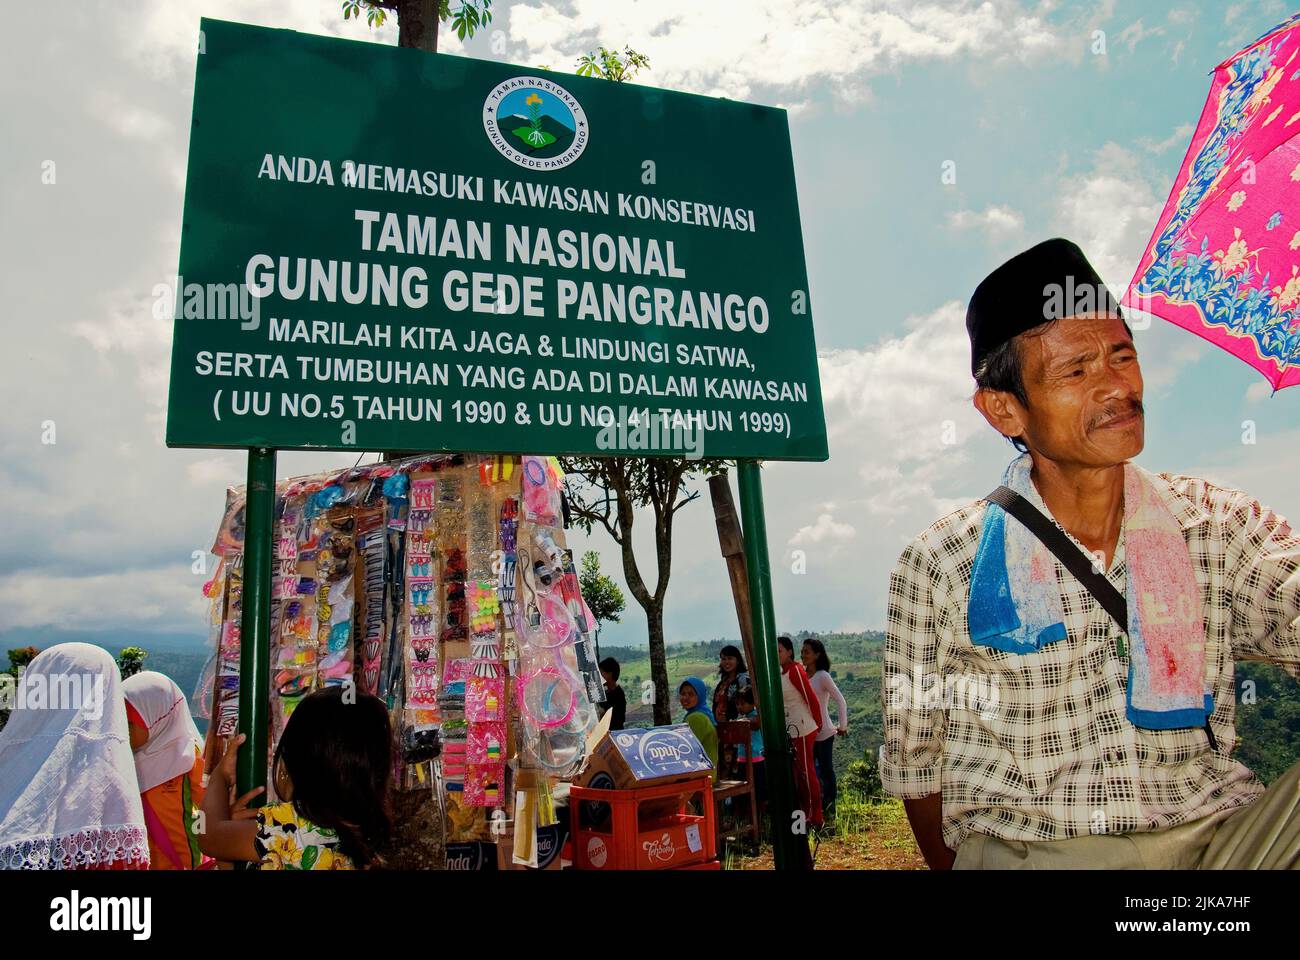 Dorfbewohner werden mit dem Schild des Gede-Pangrango-Nationalparks in Nagrak fotografiert, einem Bauerndorf an der Grenze zum Gede-Pangrango-Nationalpark in Cibadak, Sukabumi, West-Java, Indonesien. Stockfoto